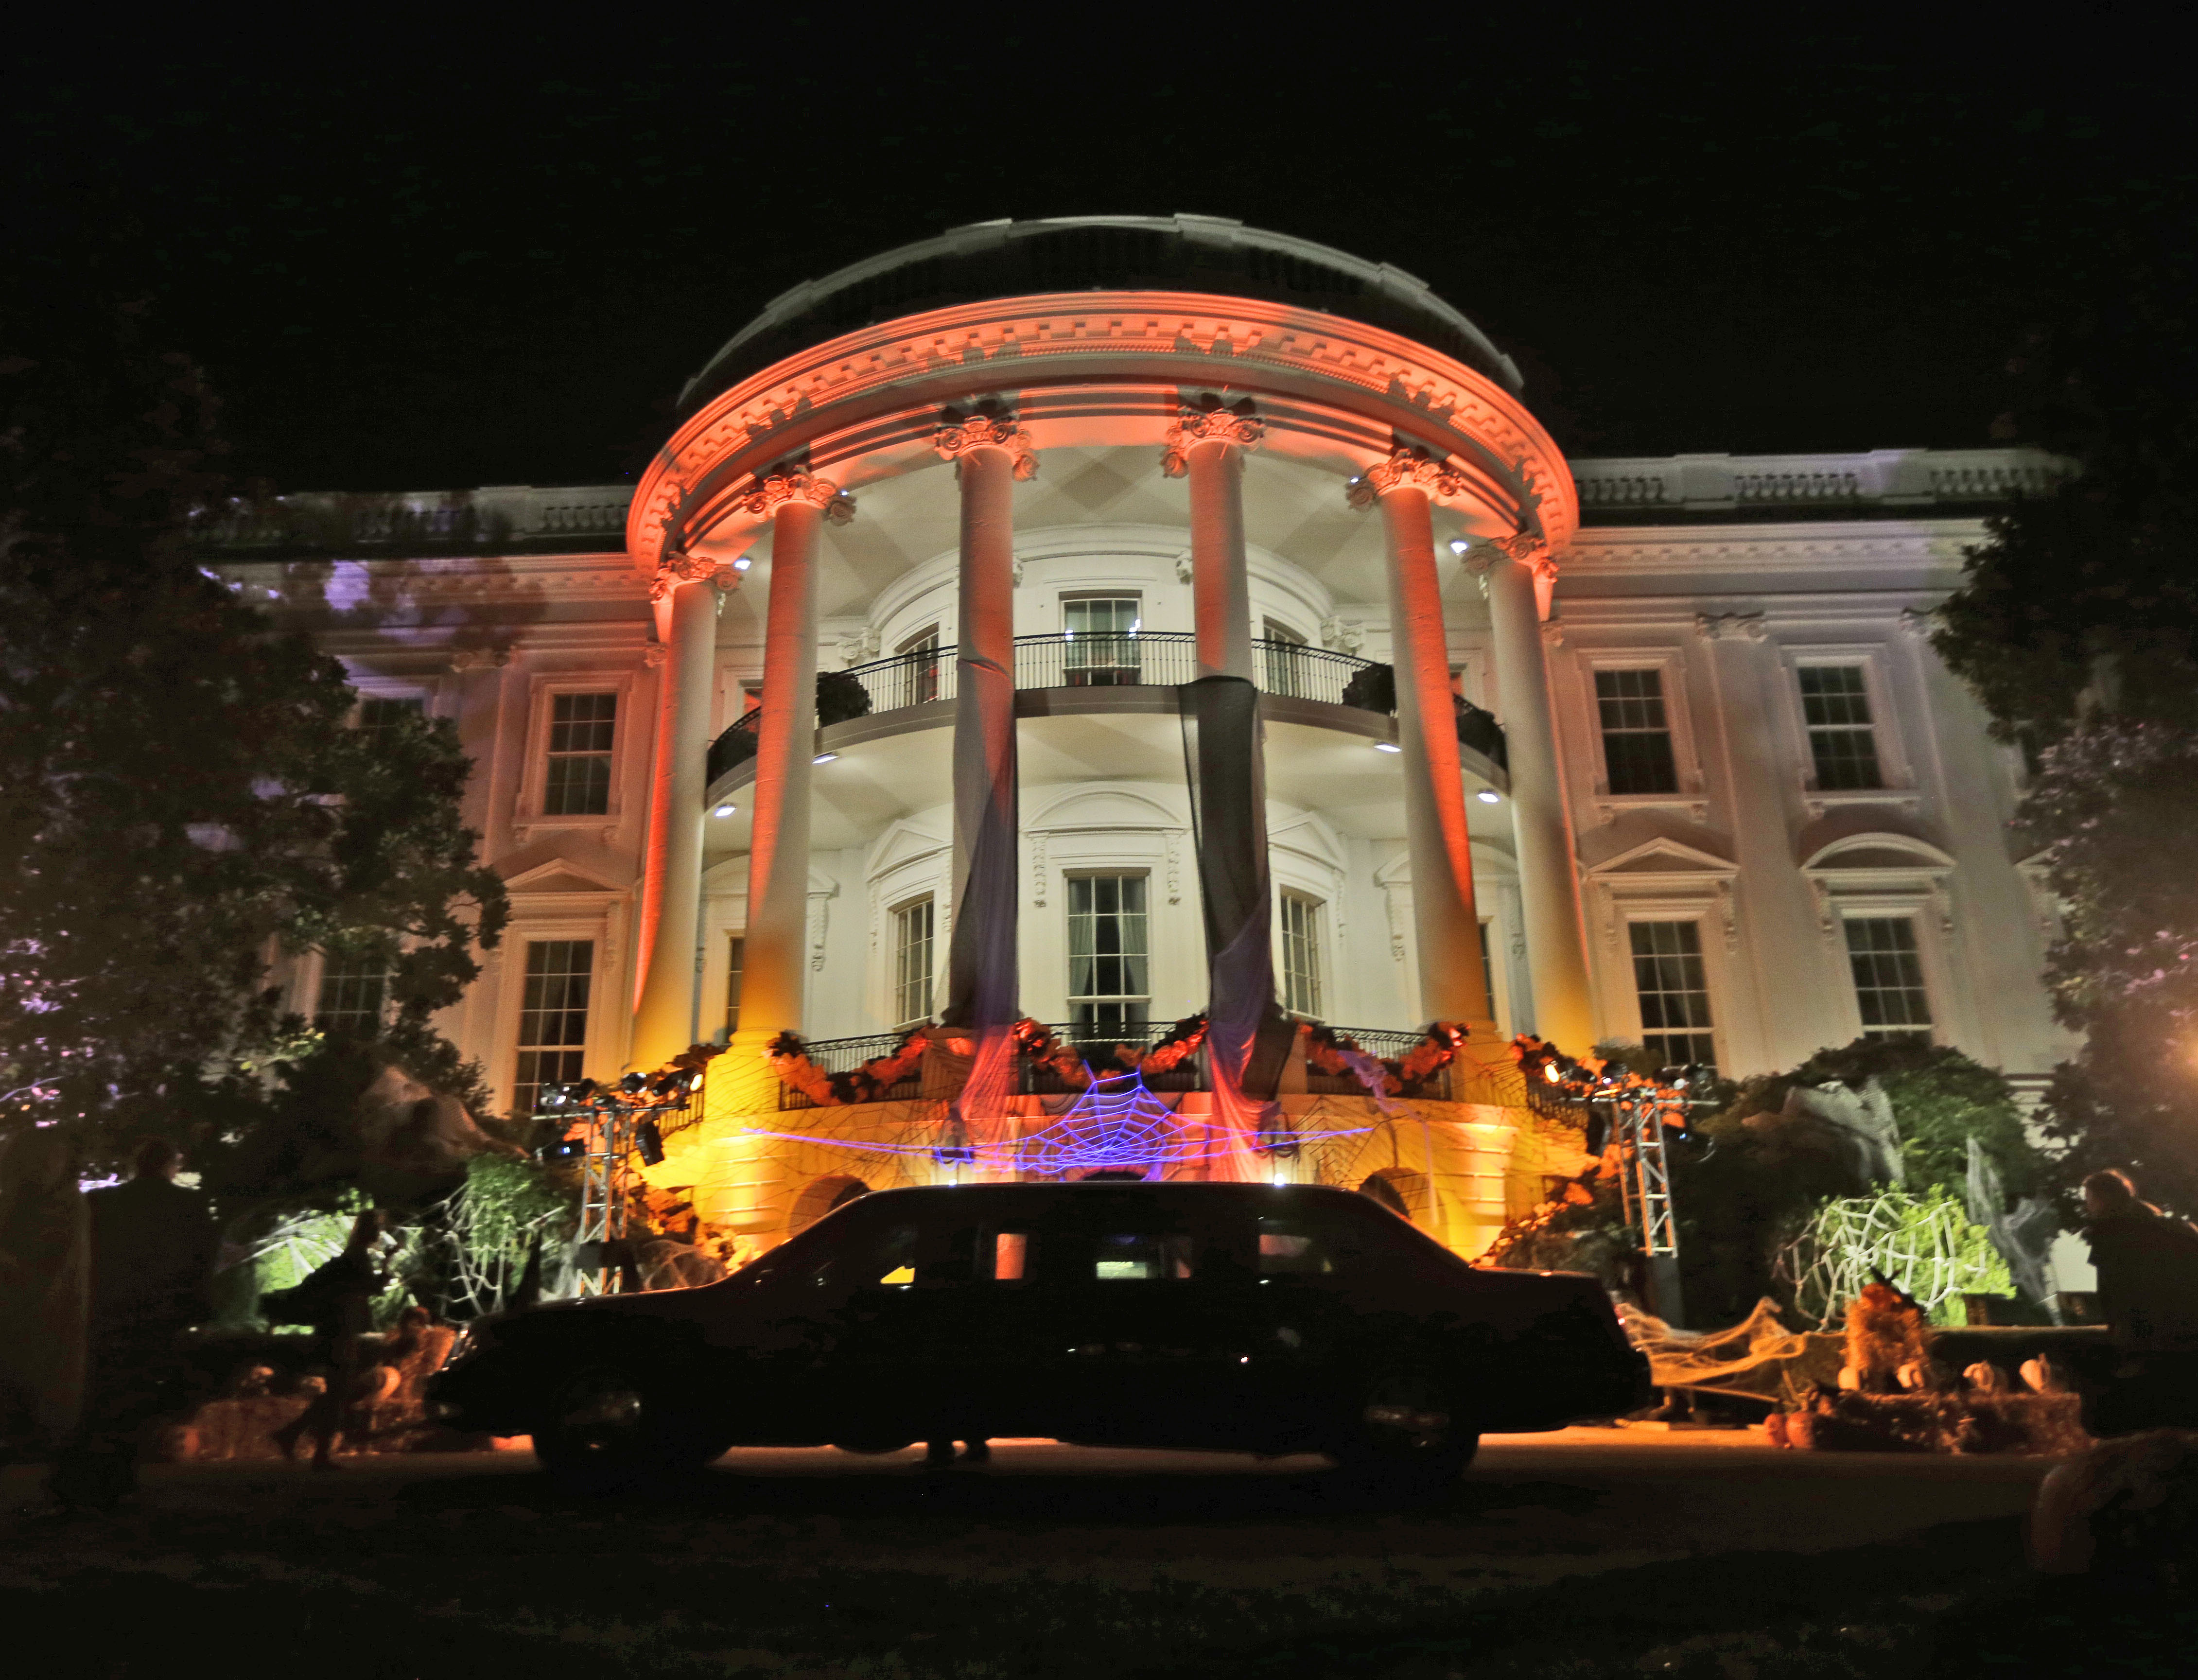 Στο χρώμα της πορτοκαλί κολοκύθας -ελέω Halloween- ο Λευκός Οίκος